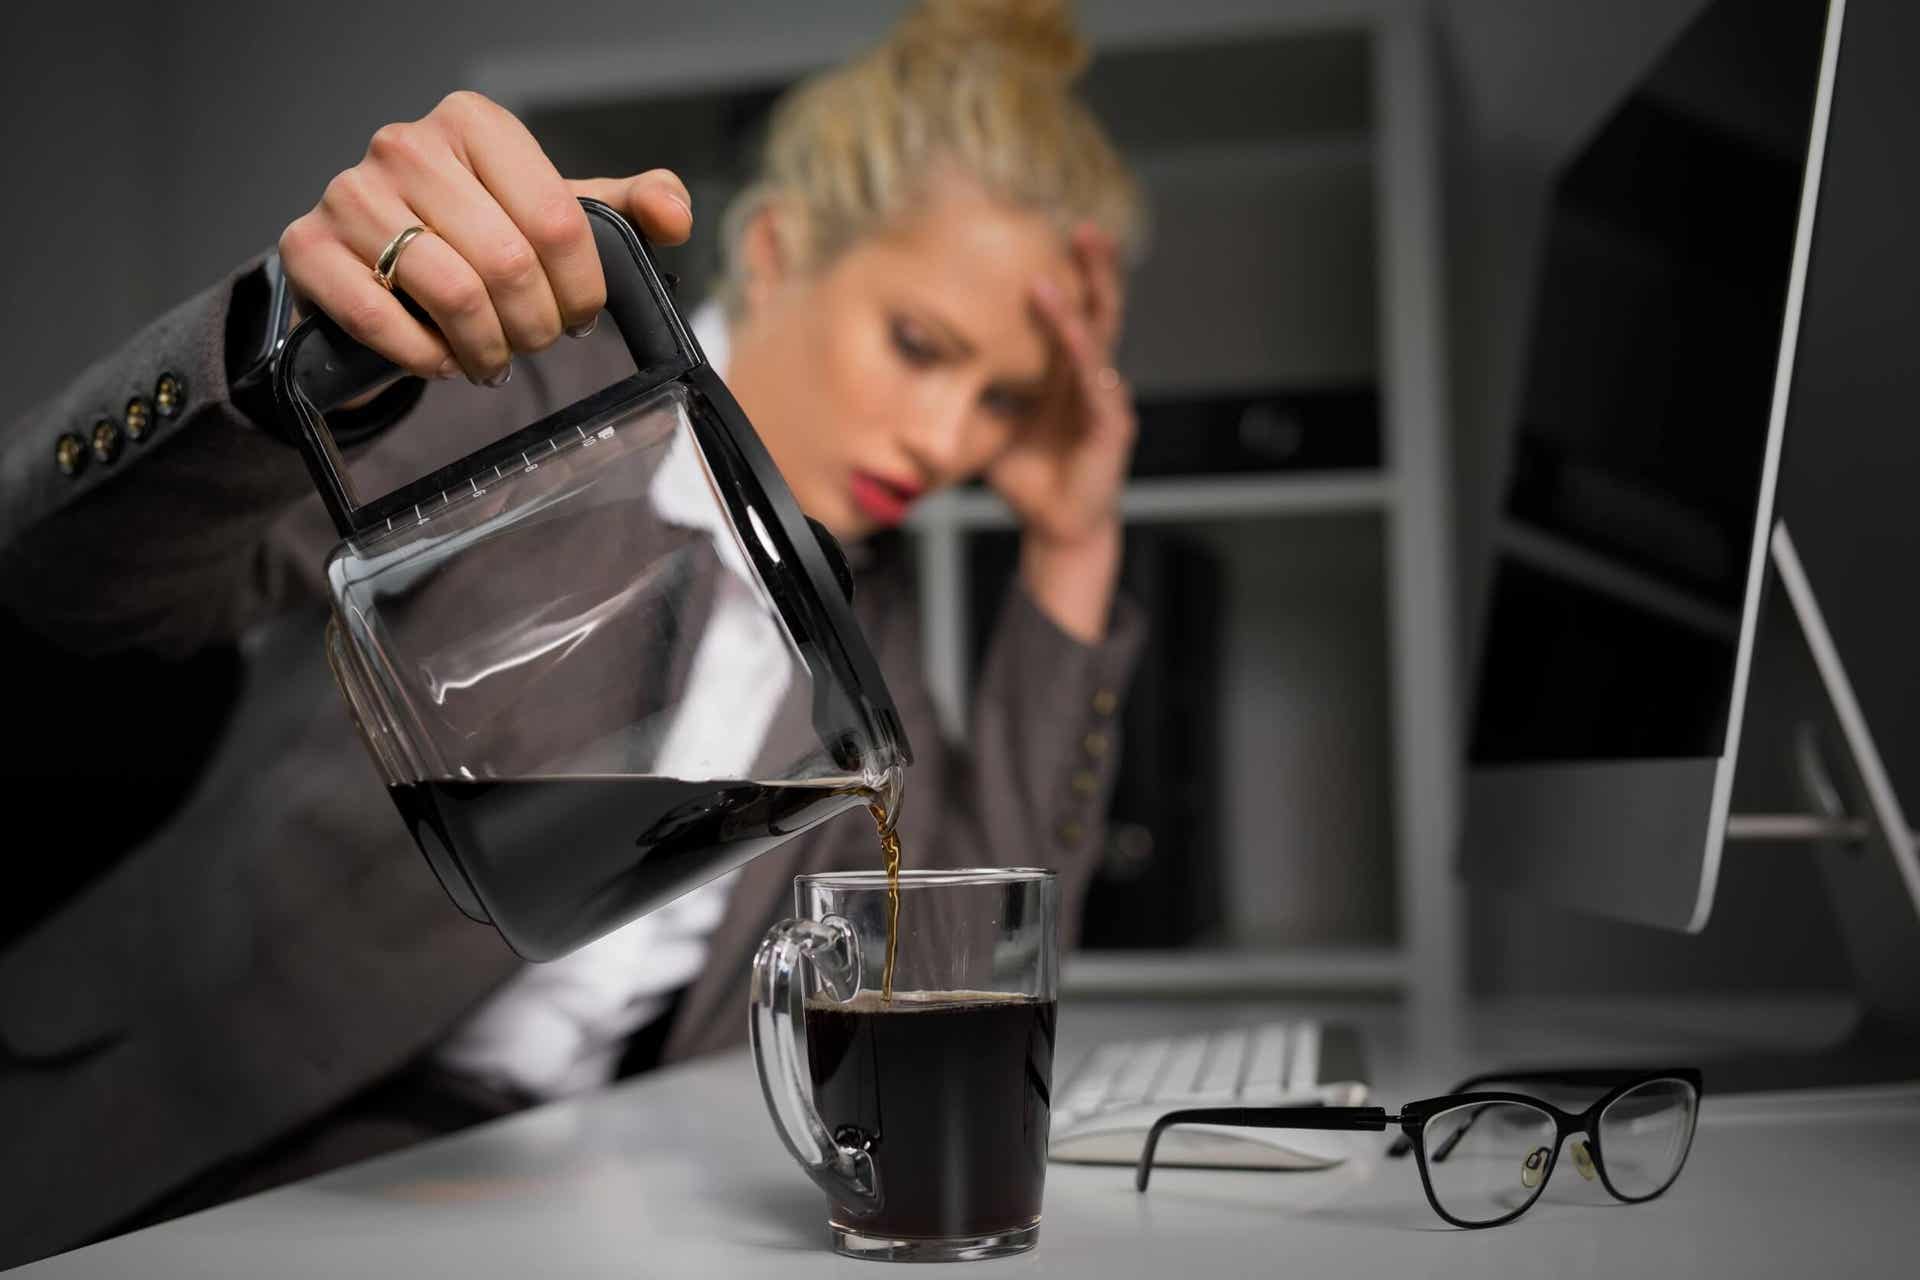 La dieta para reflujo gastroesofágico implica evitar el café